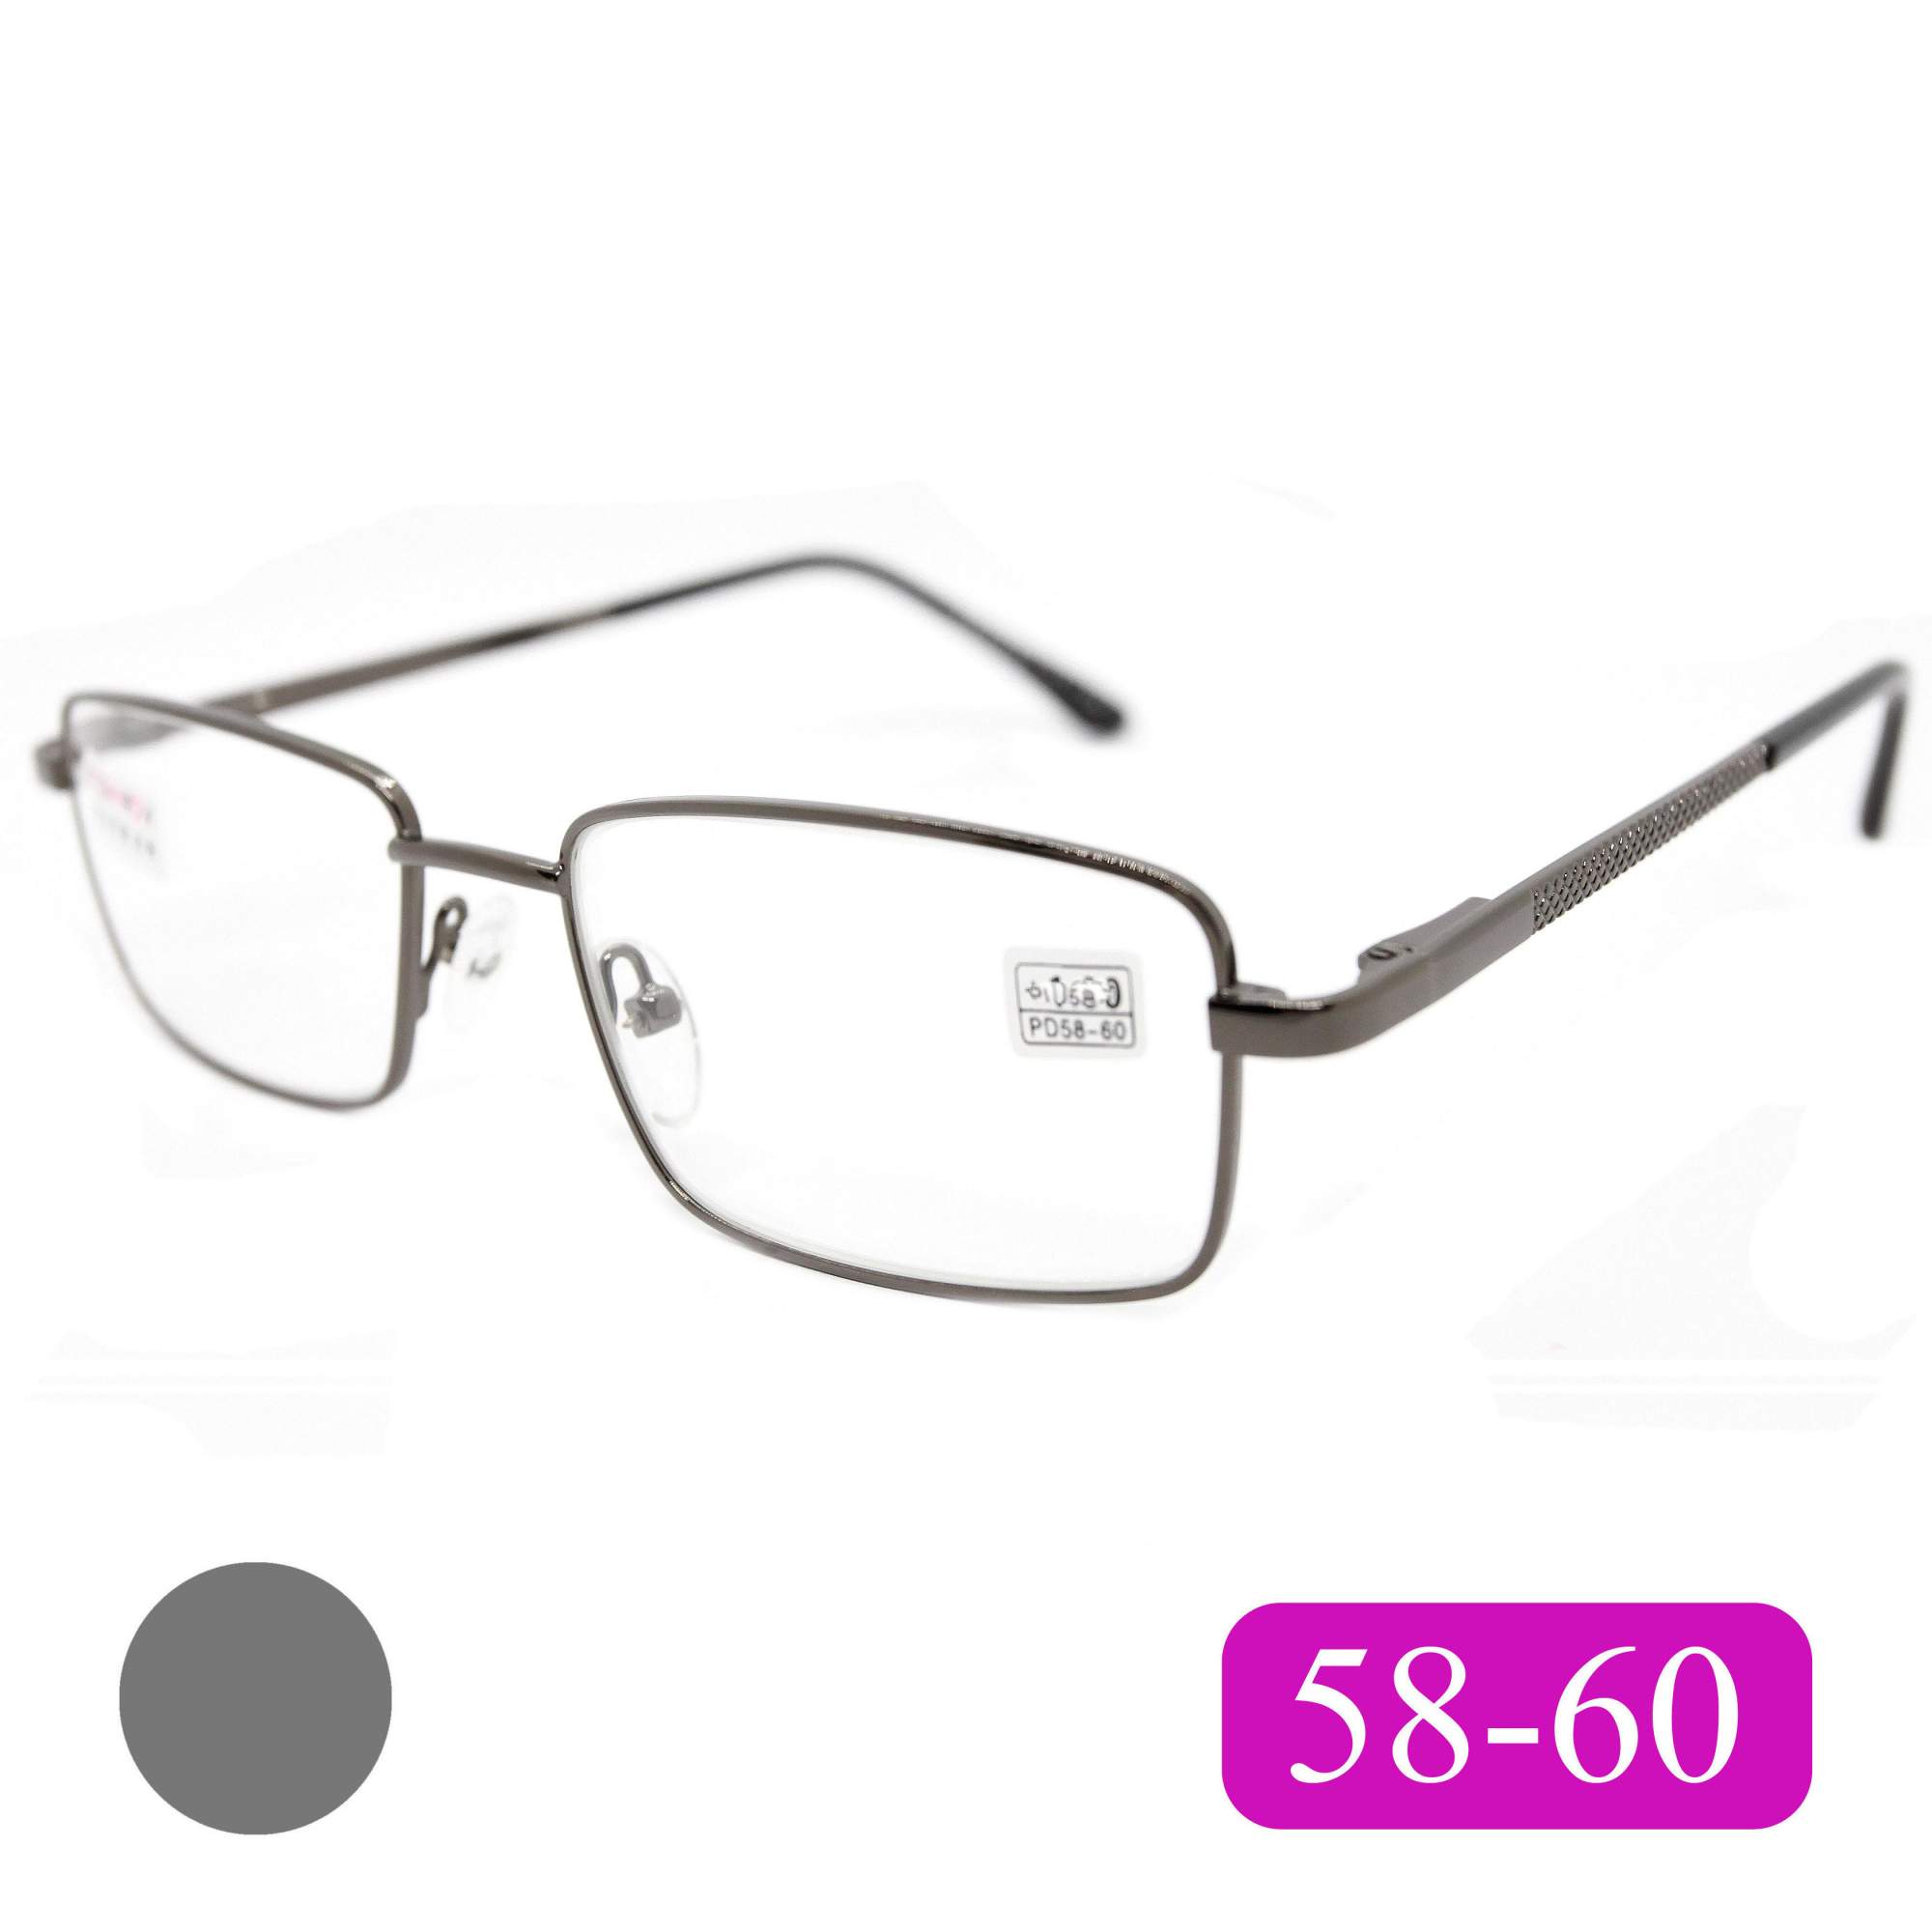 Готовые очки Fedrov 569, со стеклянной линзой, +3,00, без футляра, цвет серый, РЦ 58-60